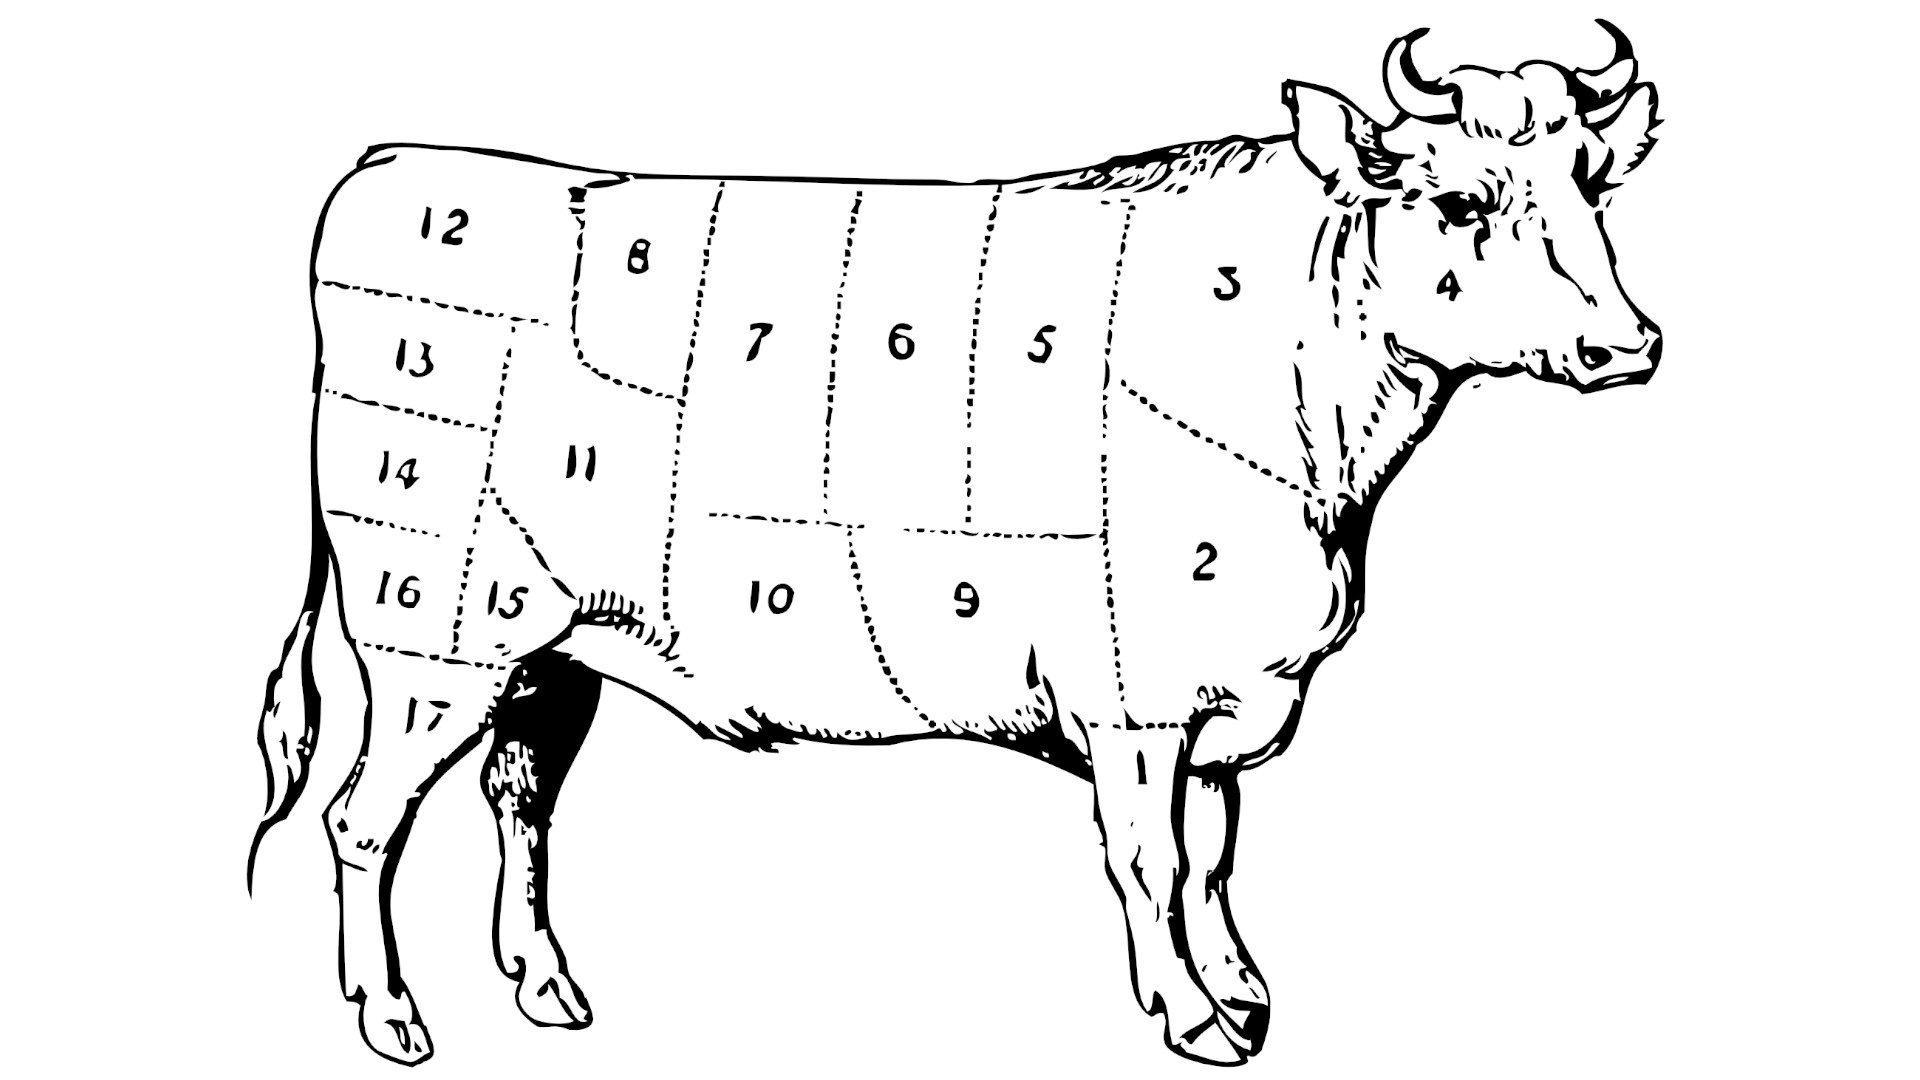 Kuh unterteilt in essbare Teile